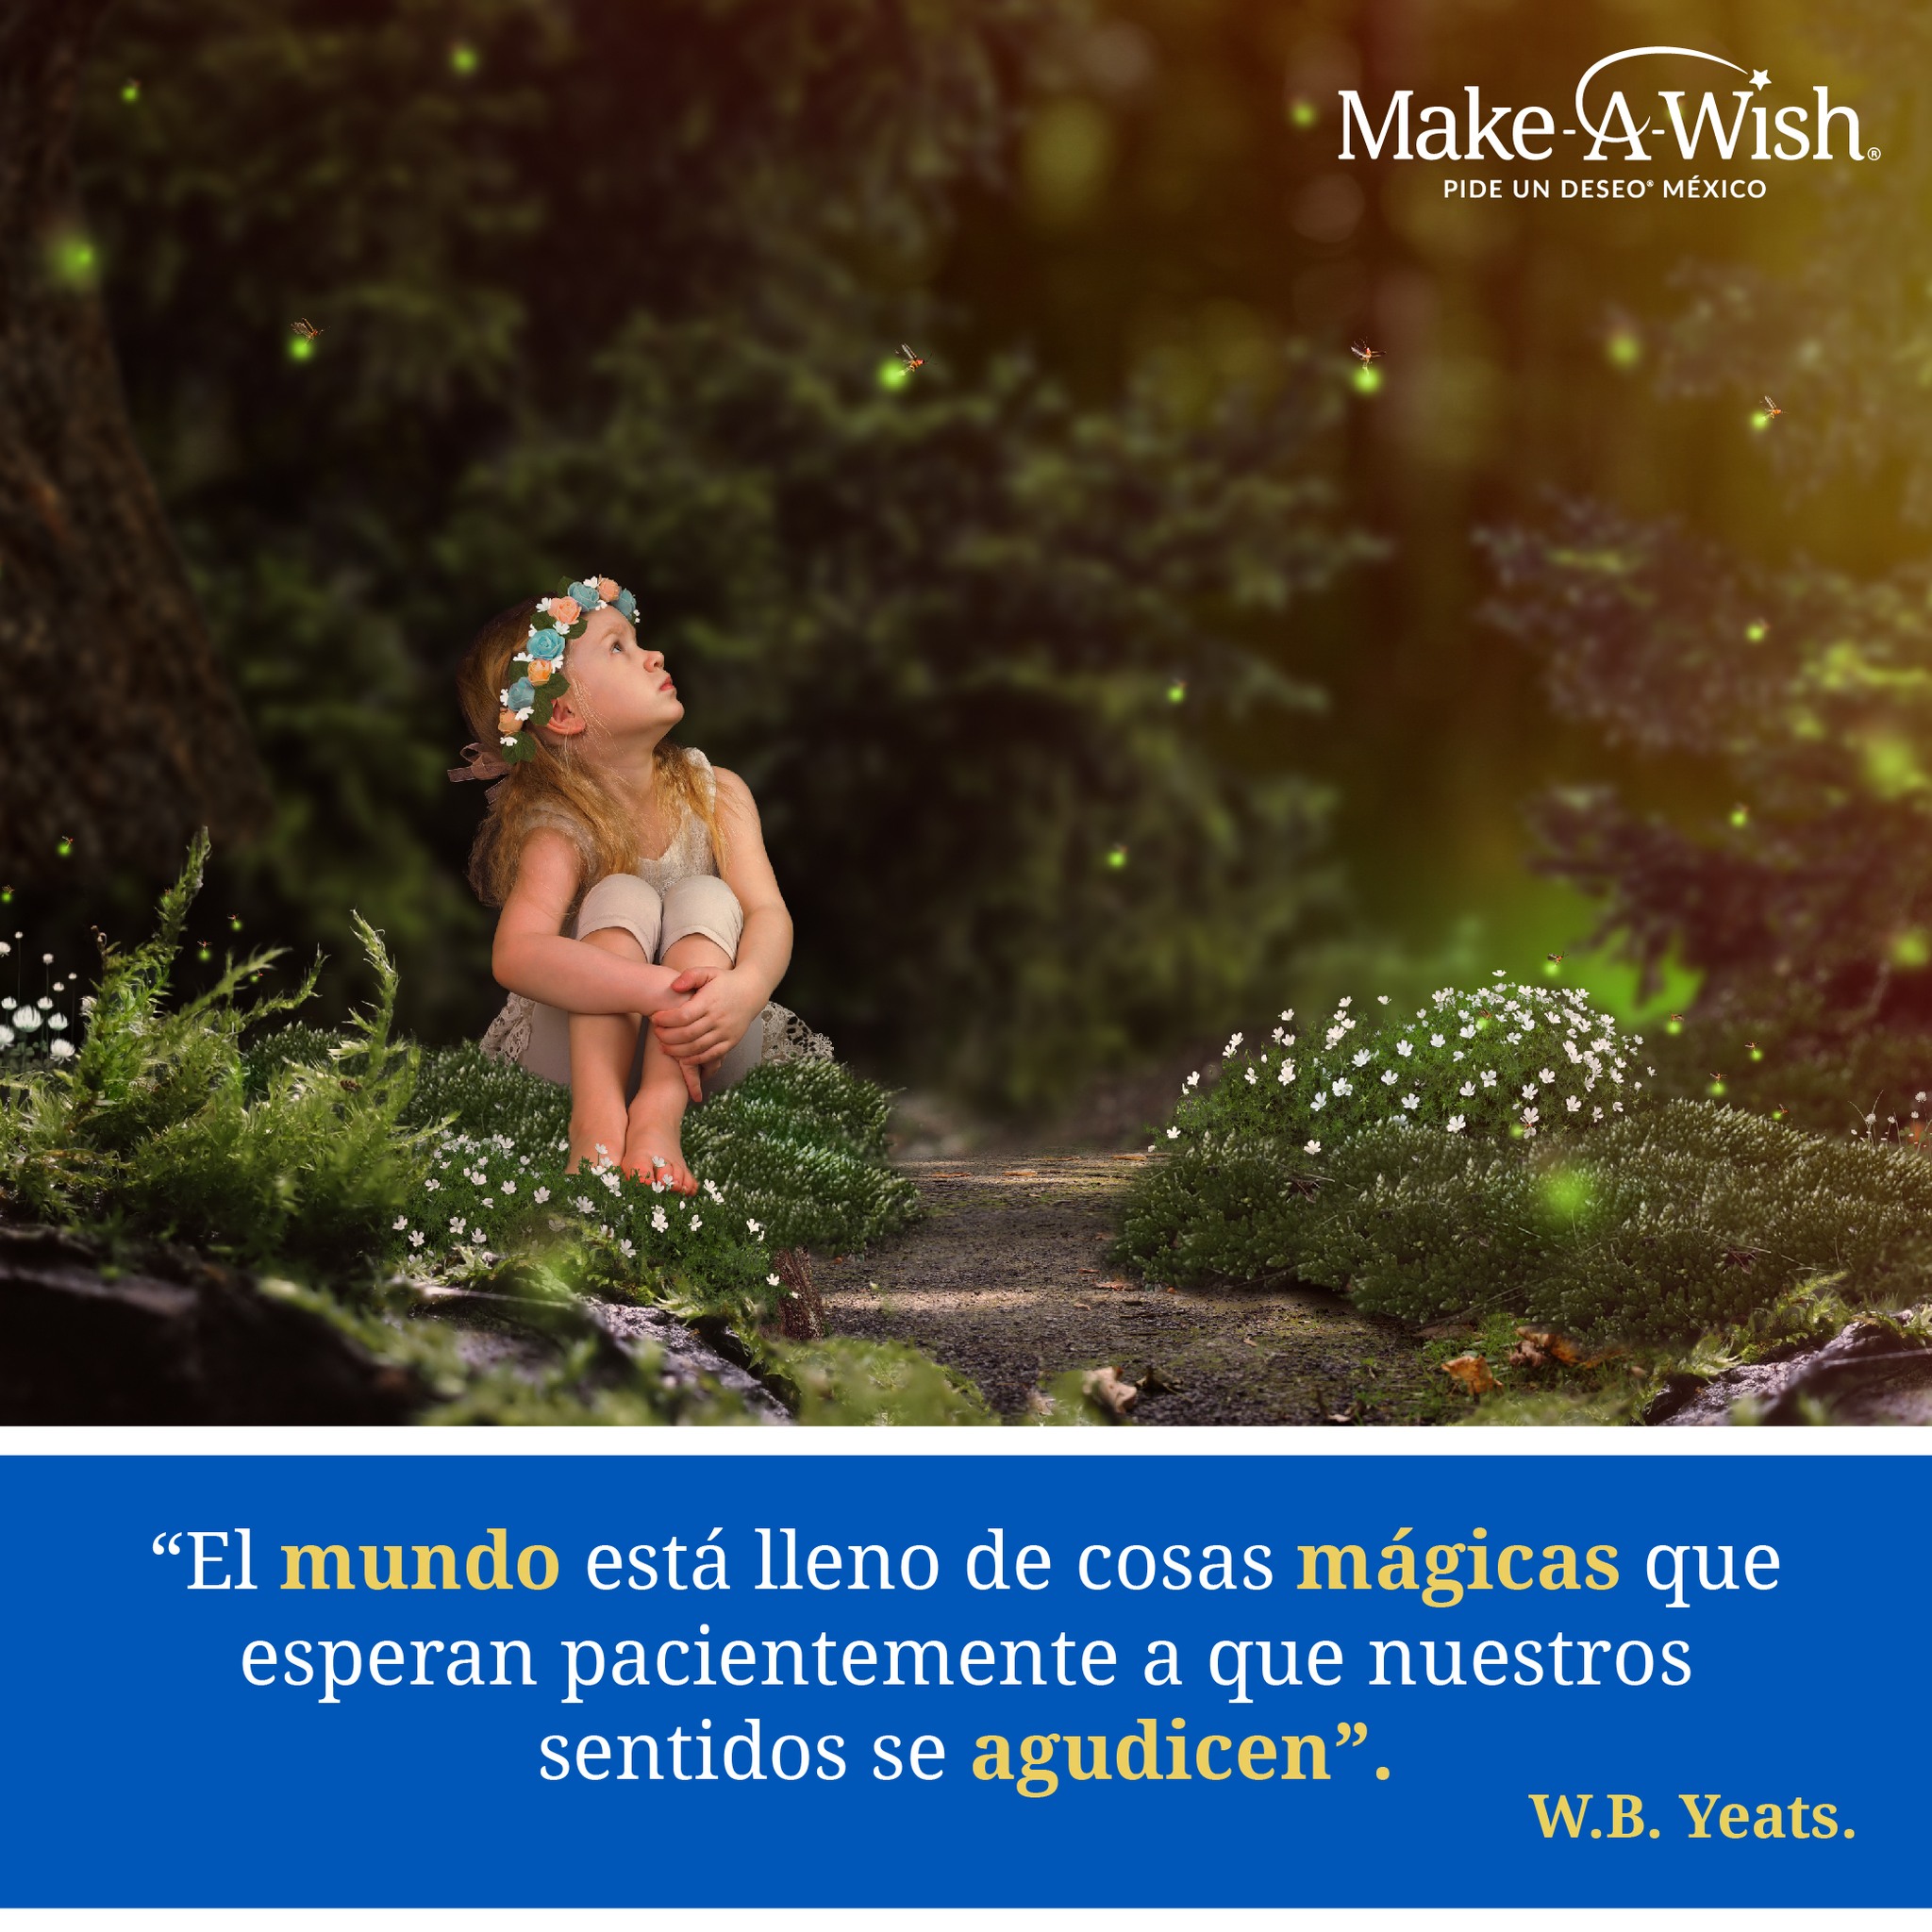 Make a Wish: Pide un deseo para México